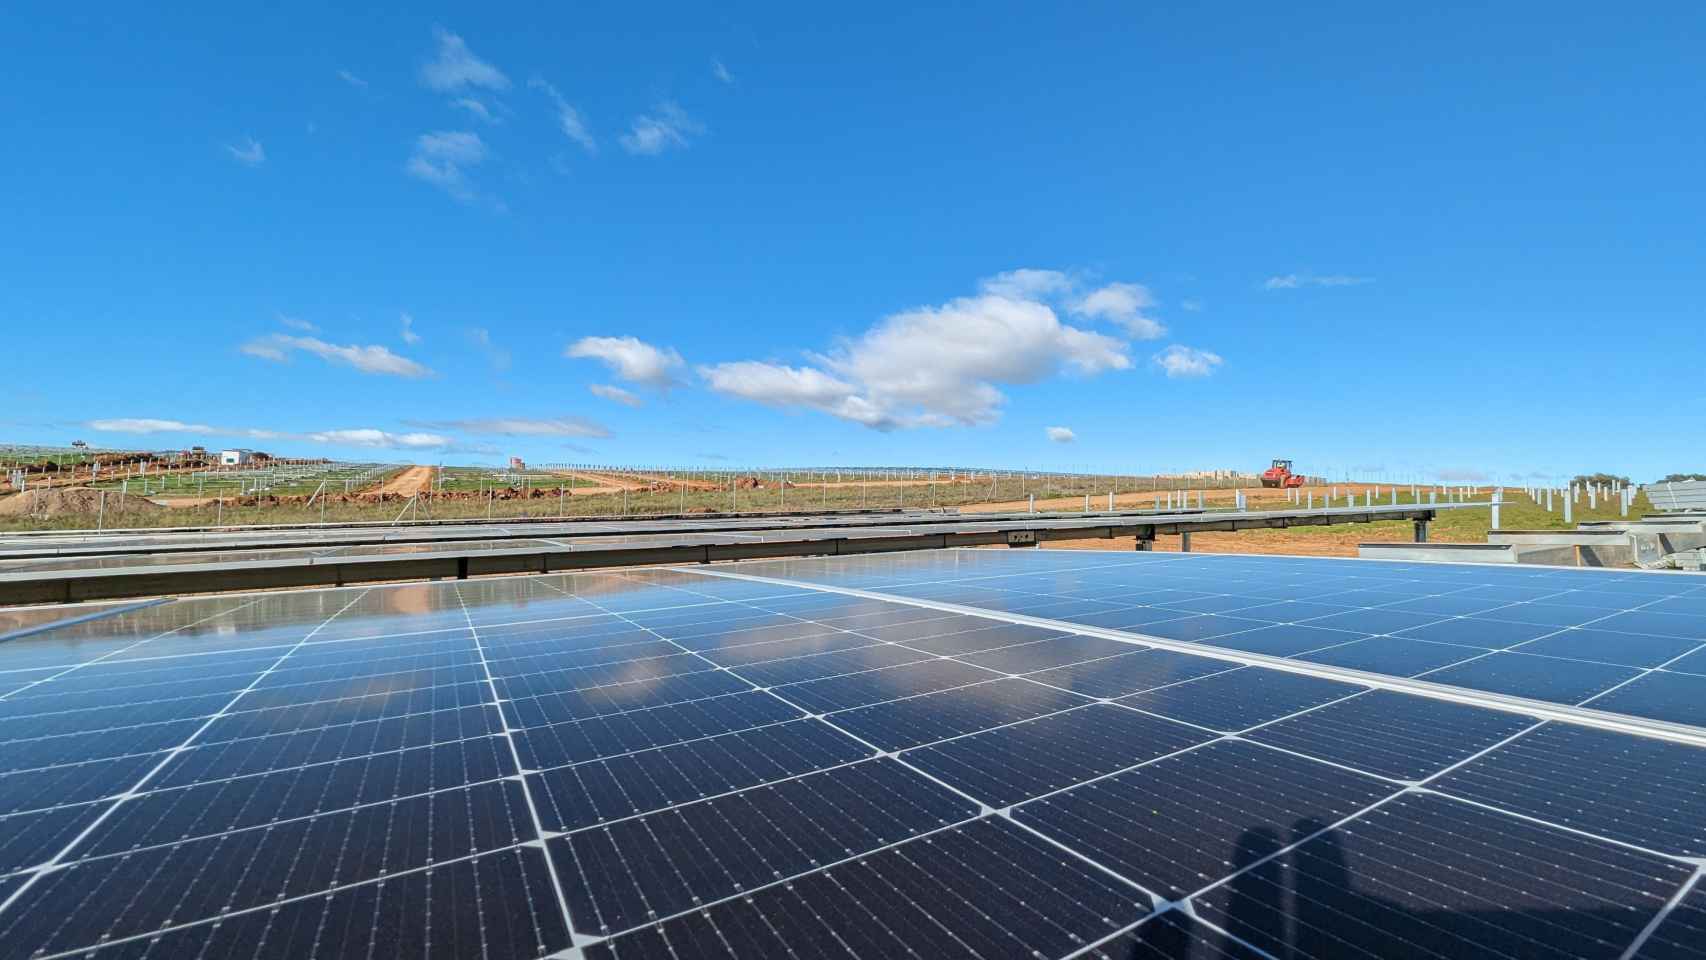 Parque fotovoltaico de Audax Renovables